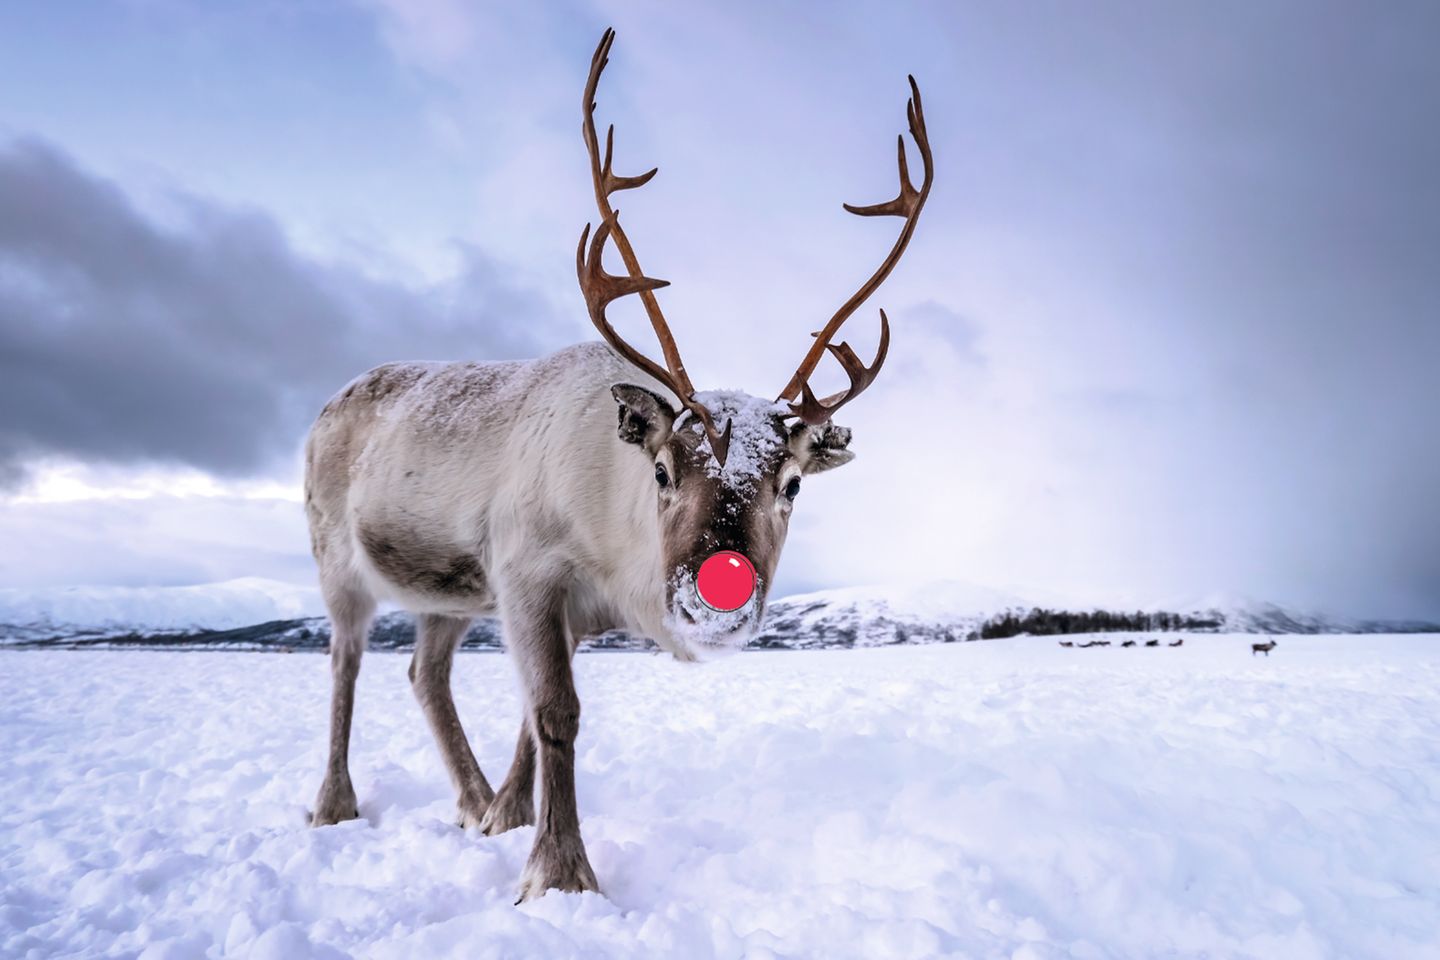 Ein Rentier mit einer roten, unechten Nase läuft in einer schneebedeckten Landschaft